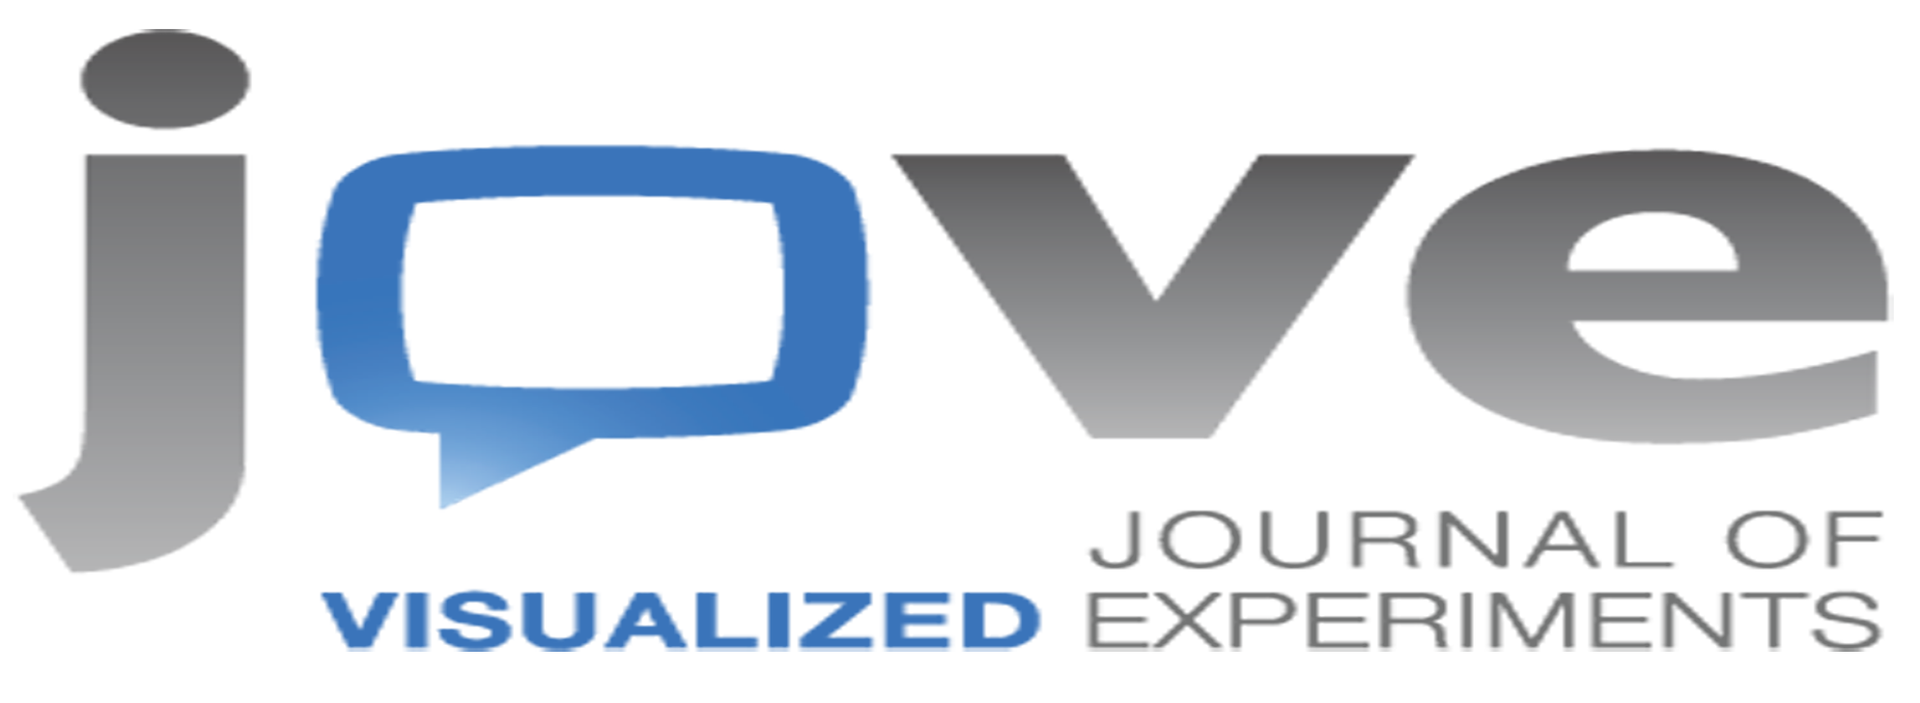 Logotyp firmy Jove